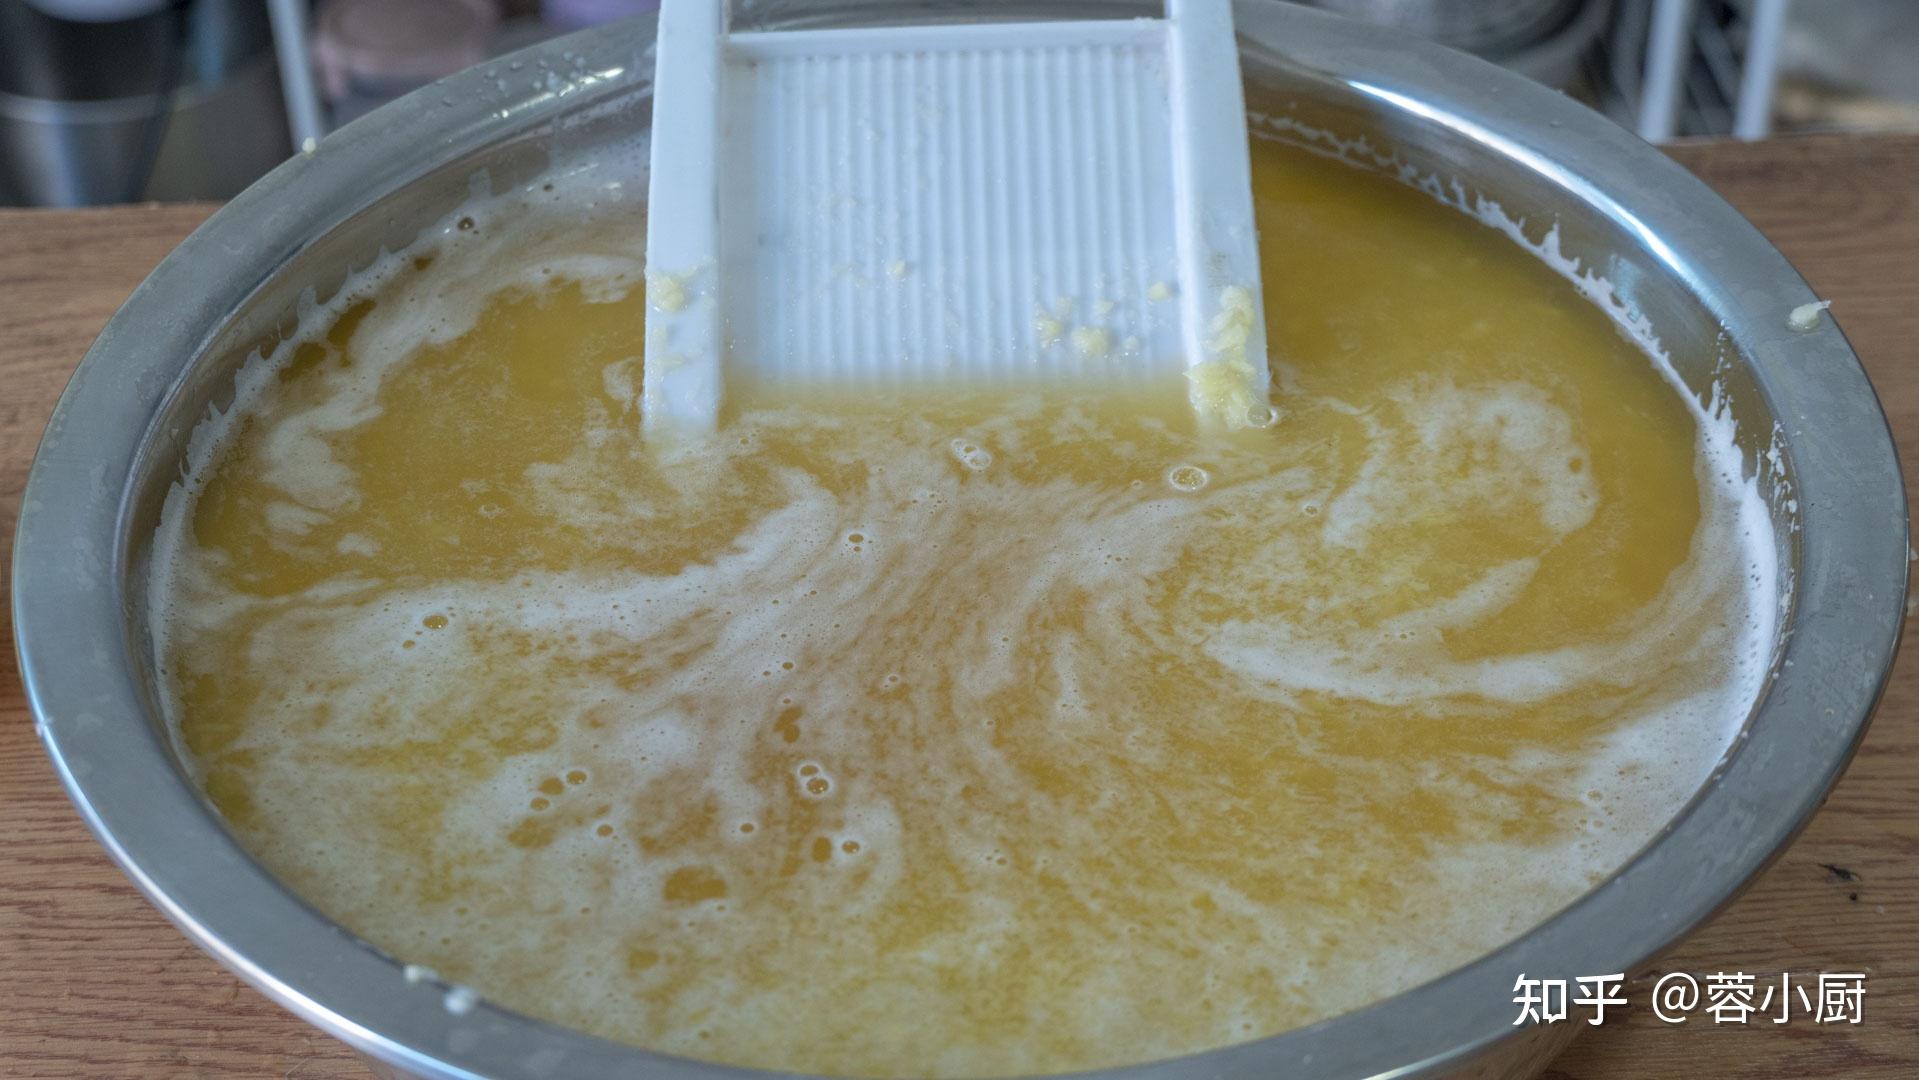 土豆去皮清洗一体机 毛刷式自动脱皮设备 根茎类蔬菜清洗去皮机 8-阿里巴巴